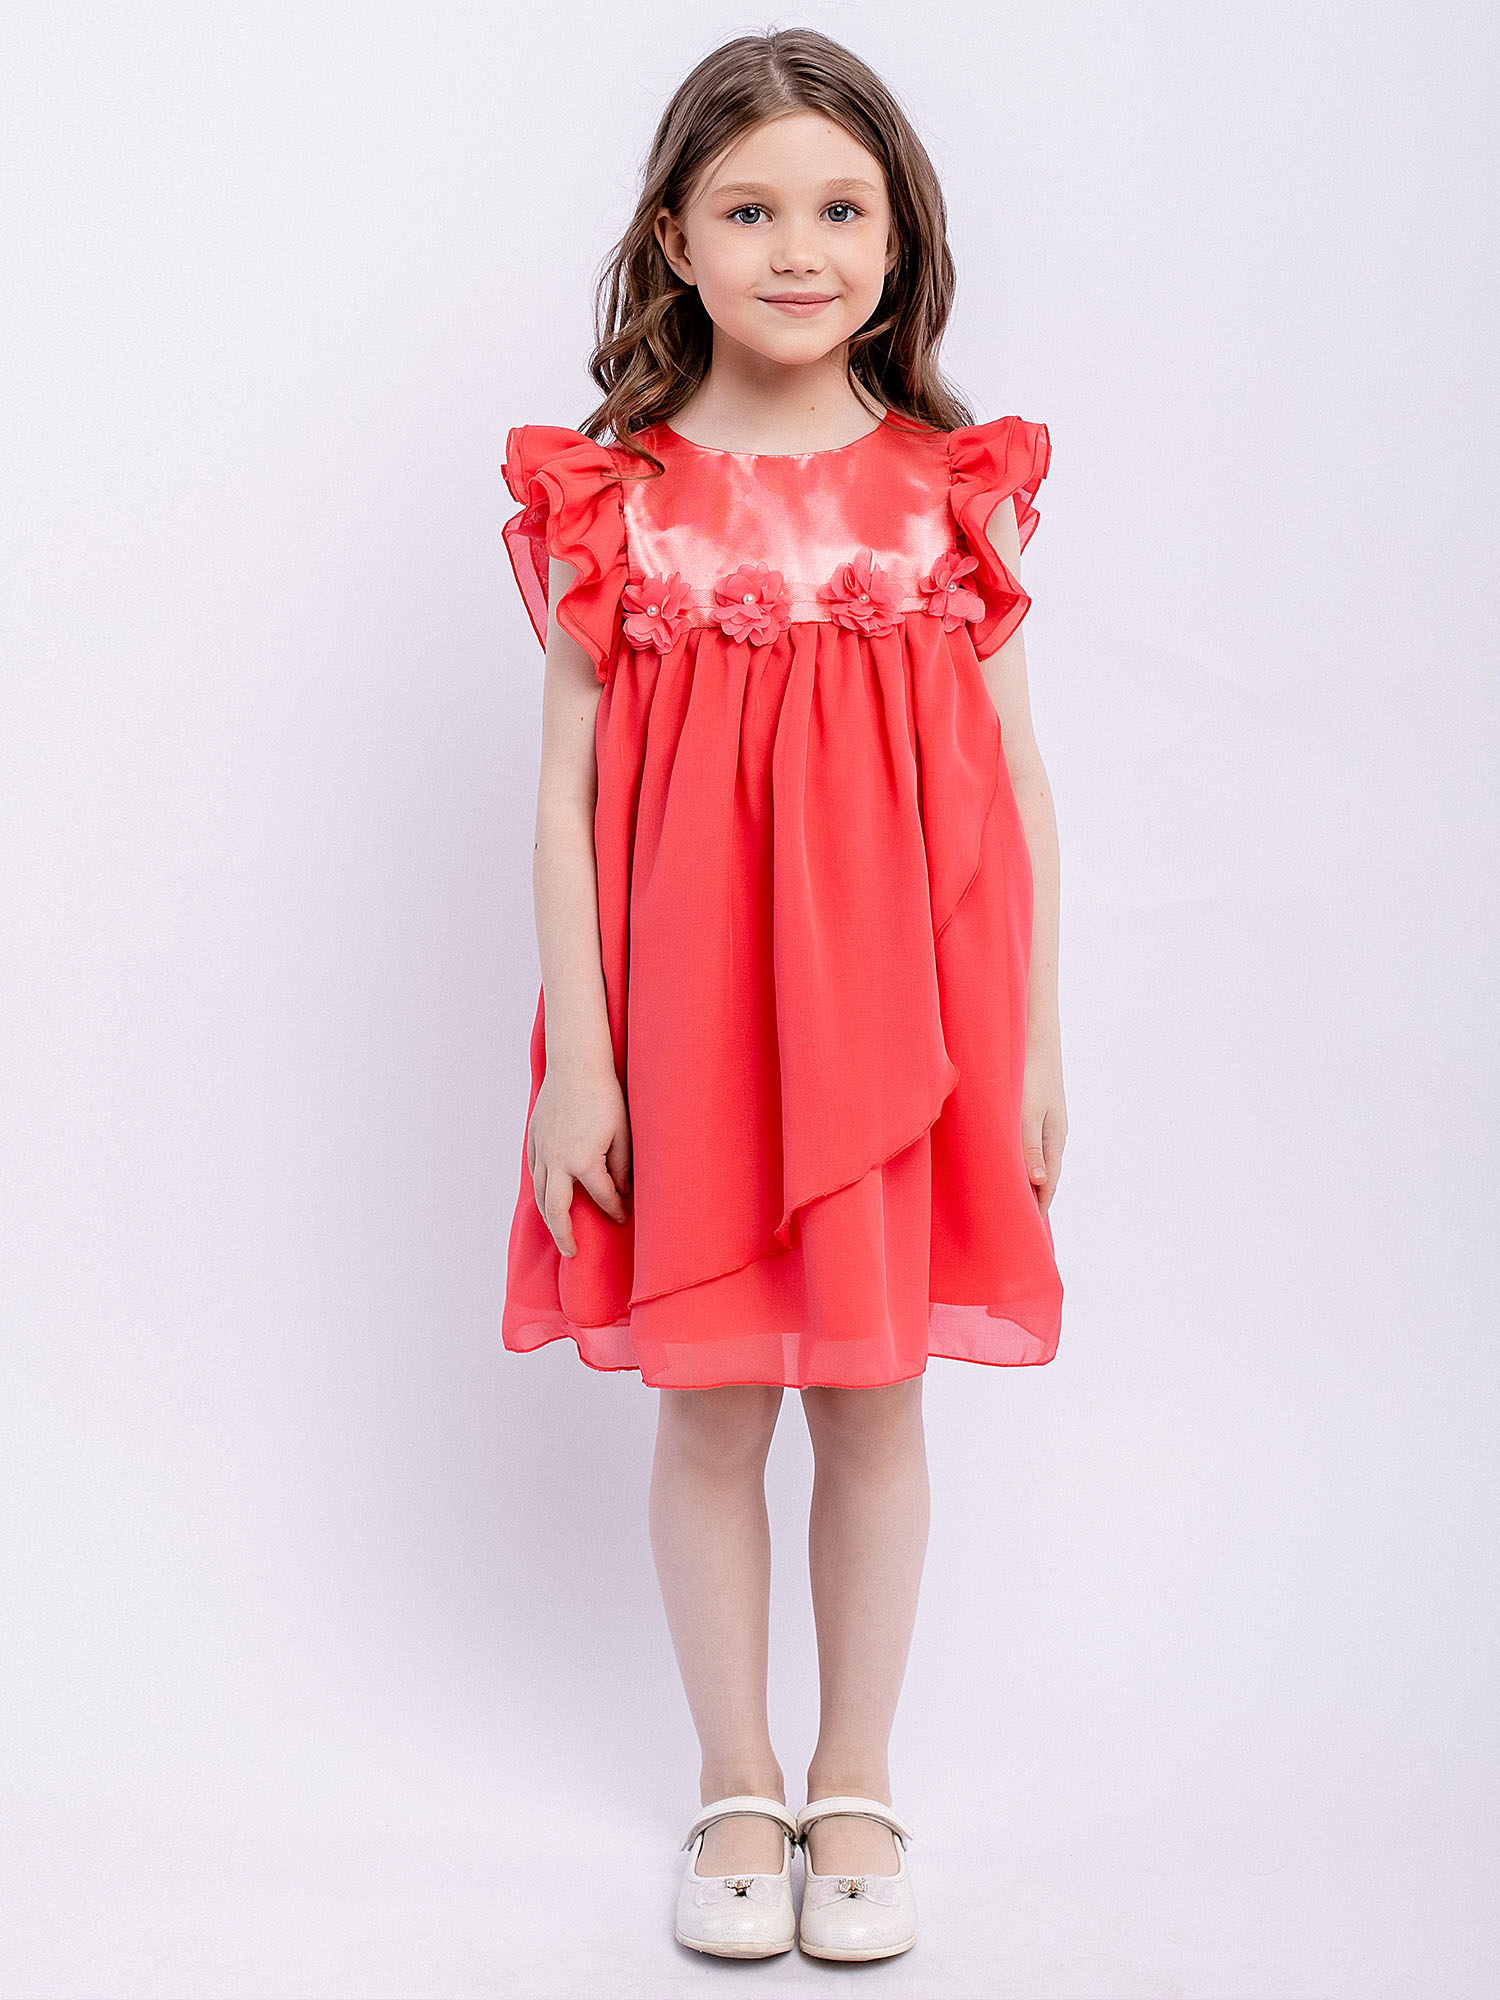 Платье детское Batik 010 п22-2, розовый фламинго, 110 комплект кофточка штанишки персик фламинго рост 68 см